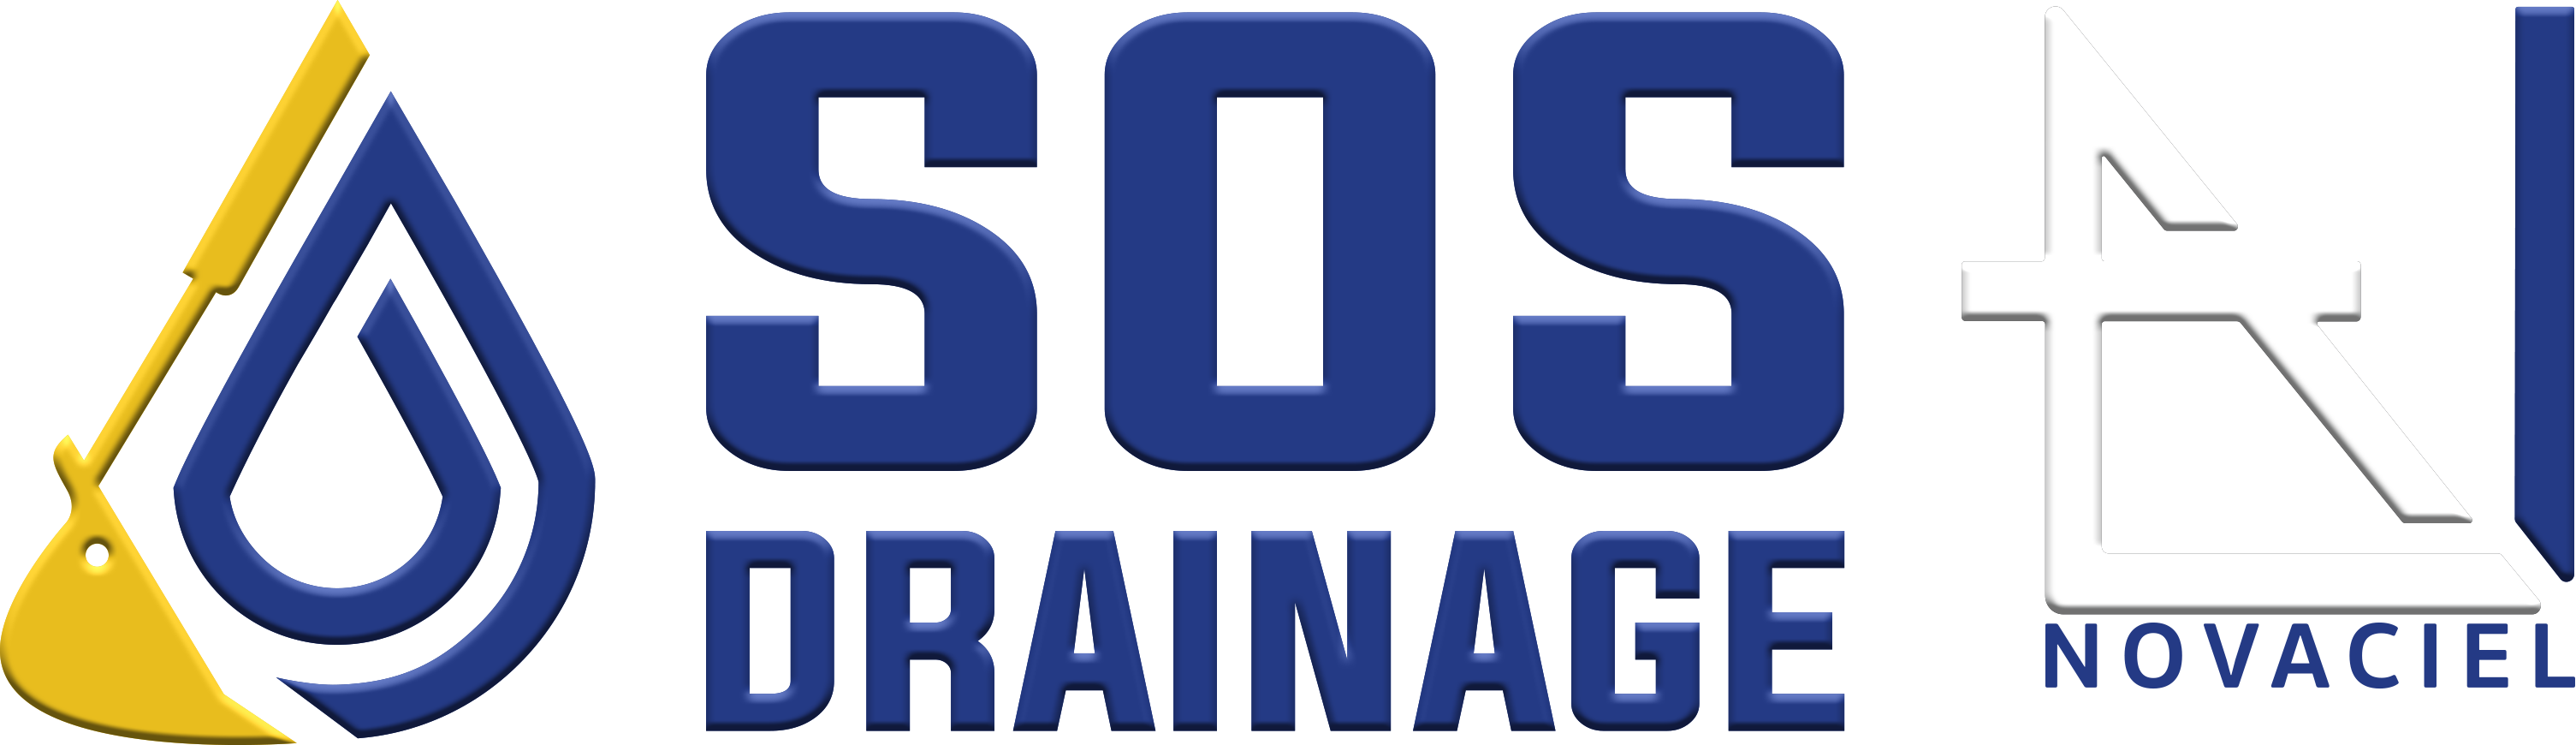 SOS Drainage - Novaciel